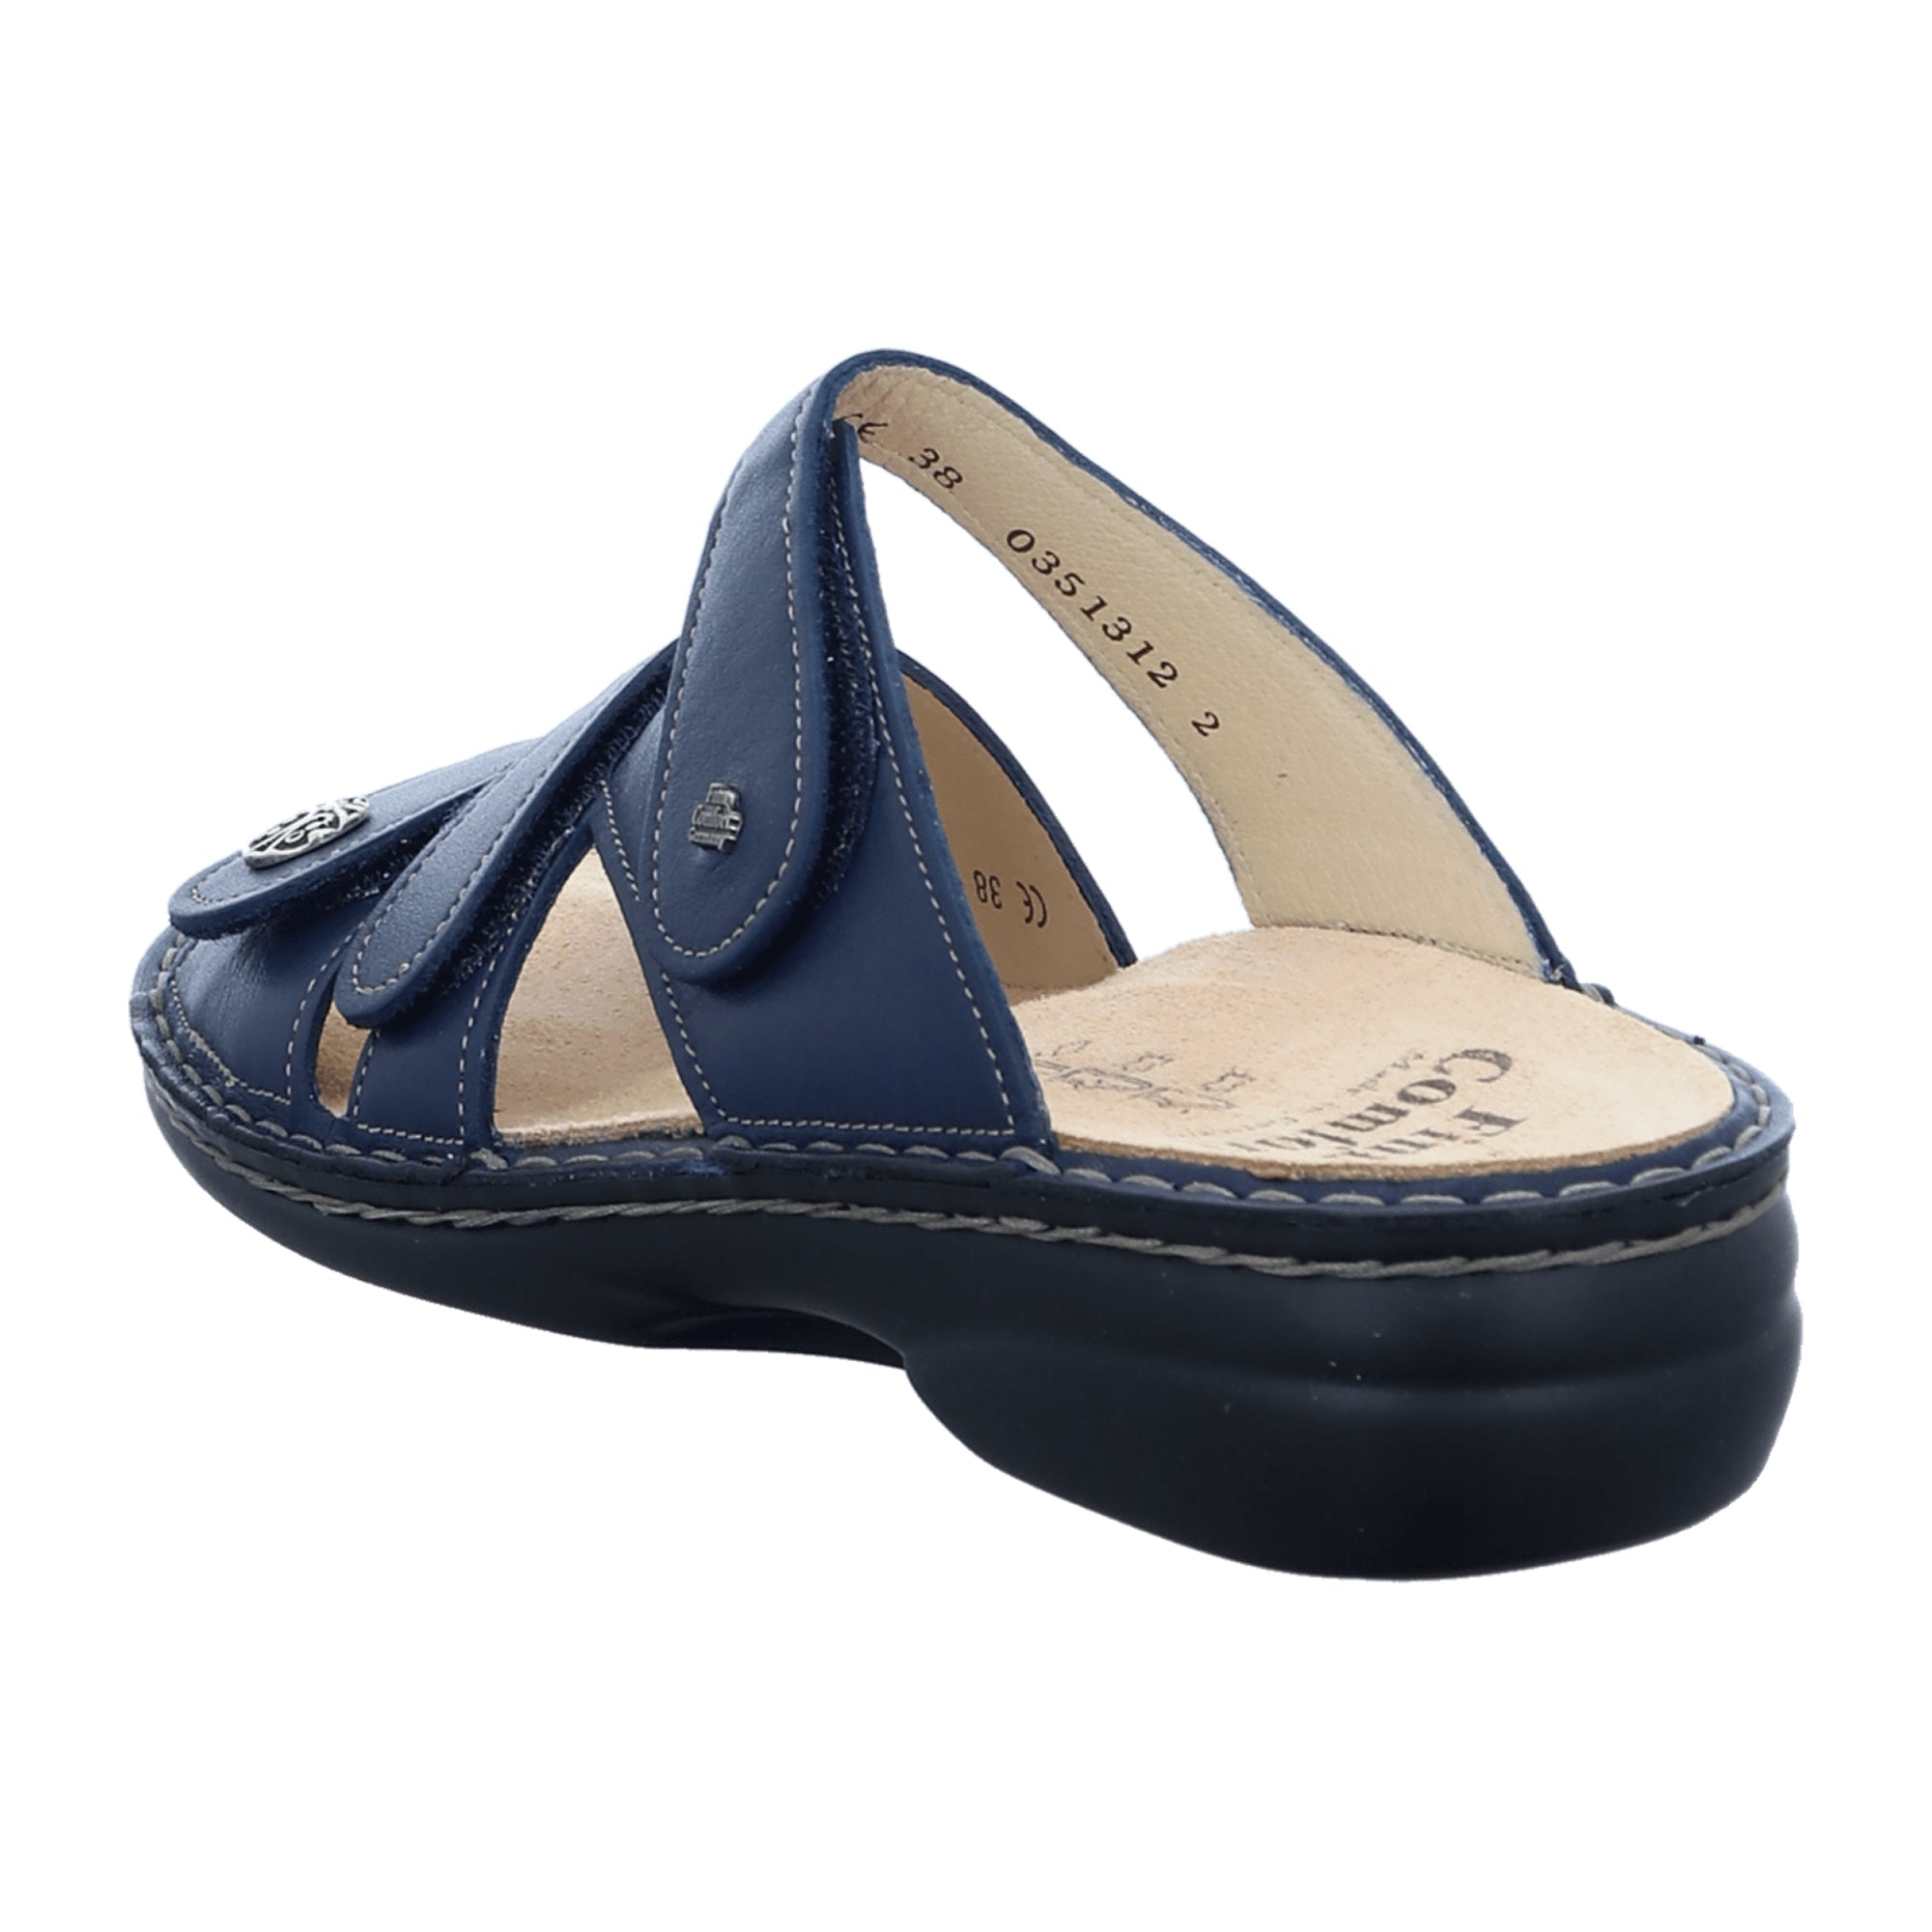 Finn Comfort Ventura-S C Women's Comfort Sandals in Blue